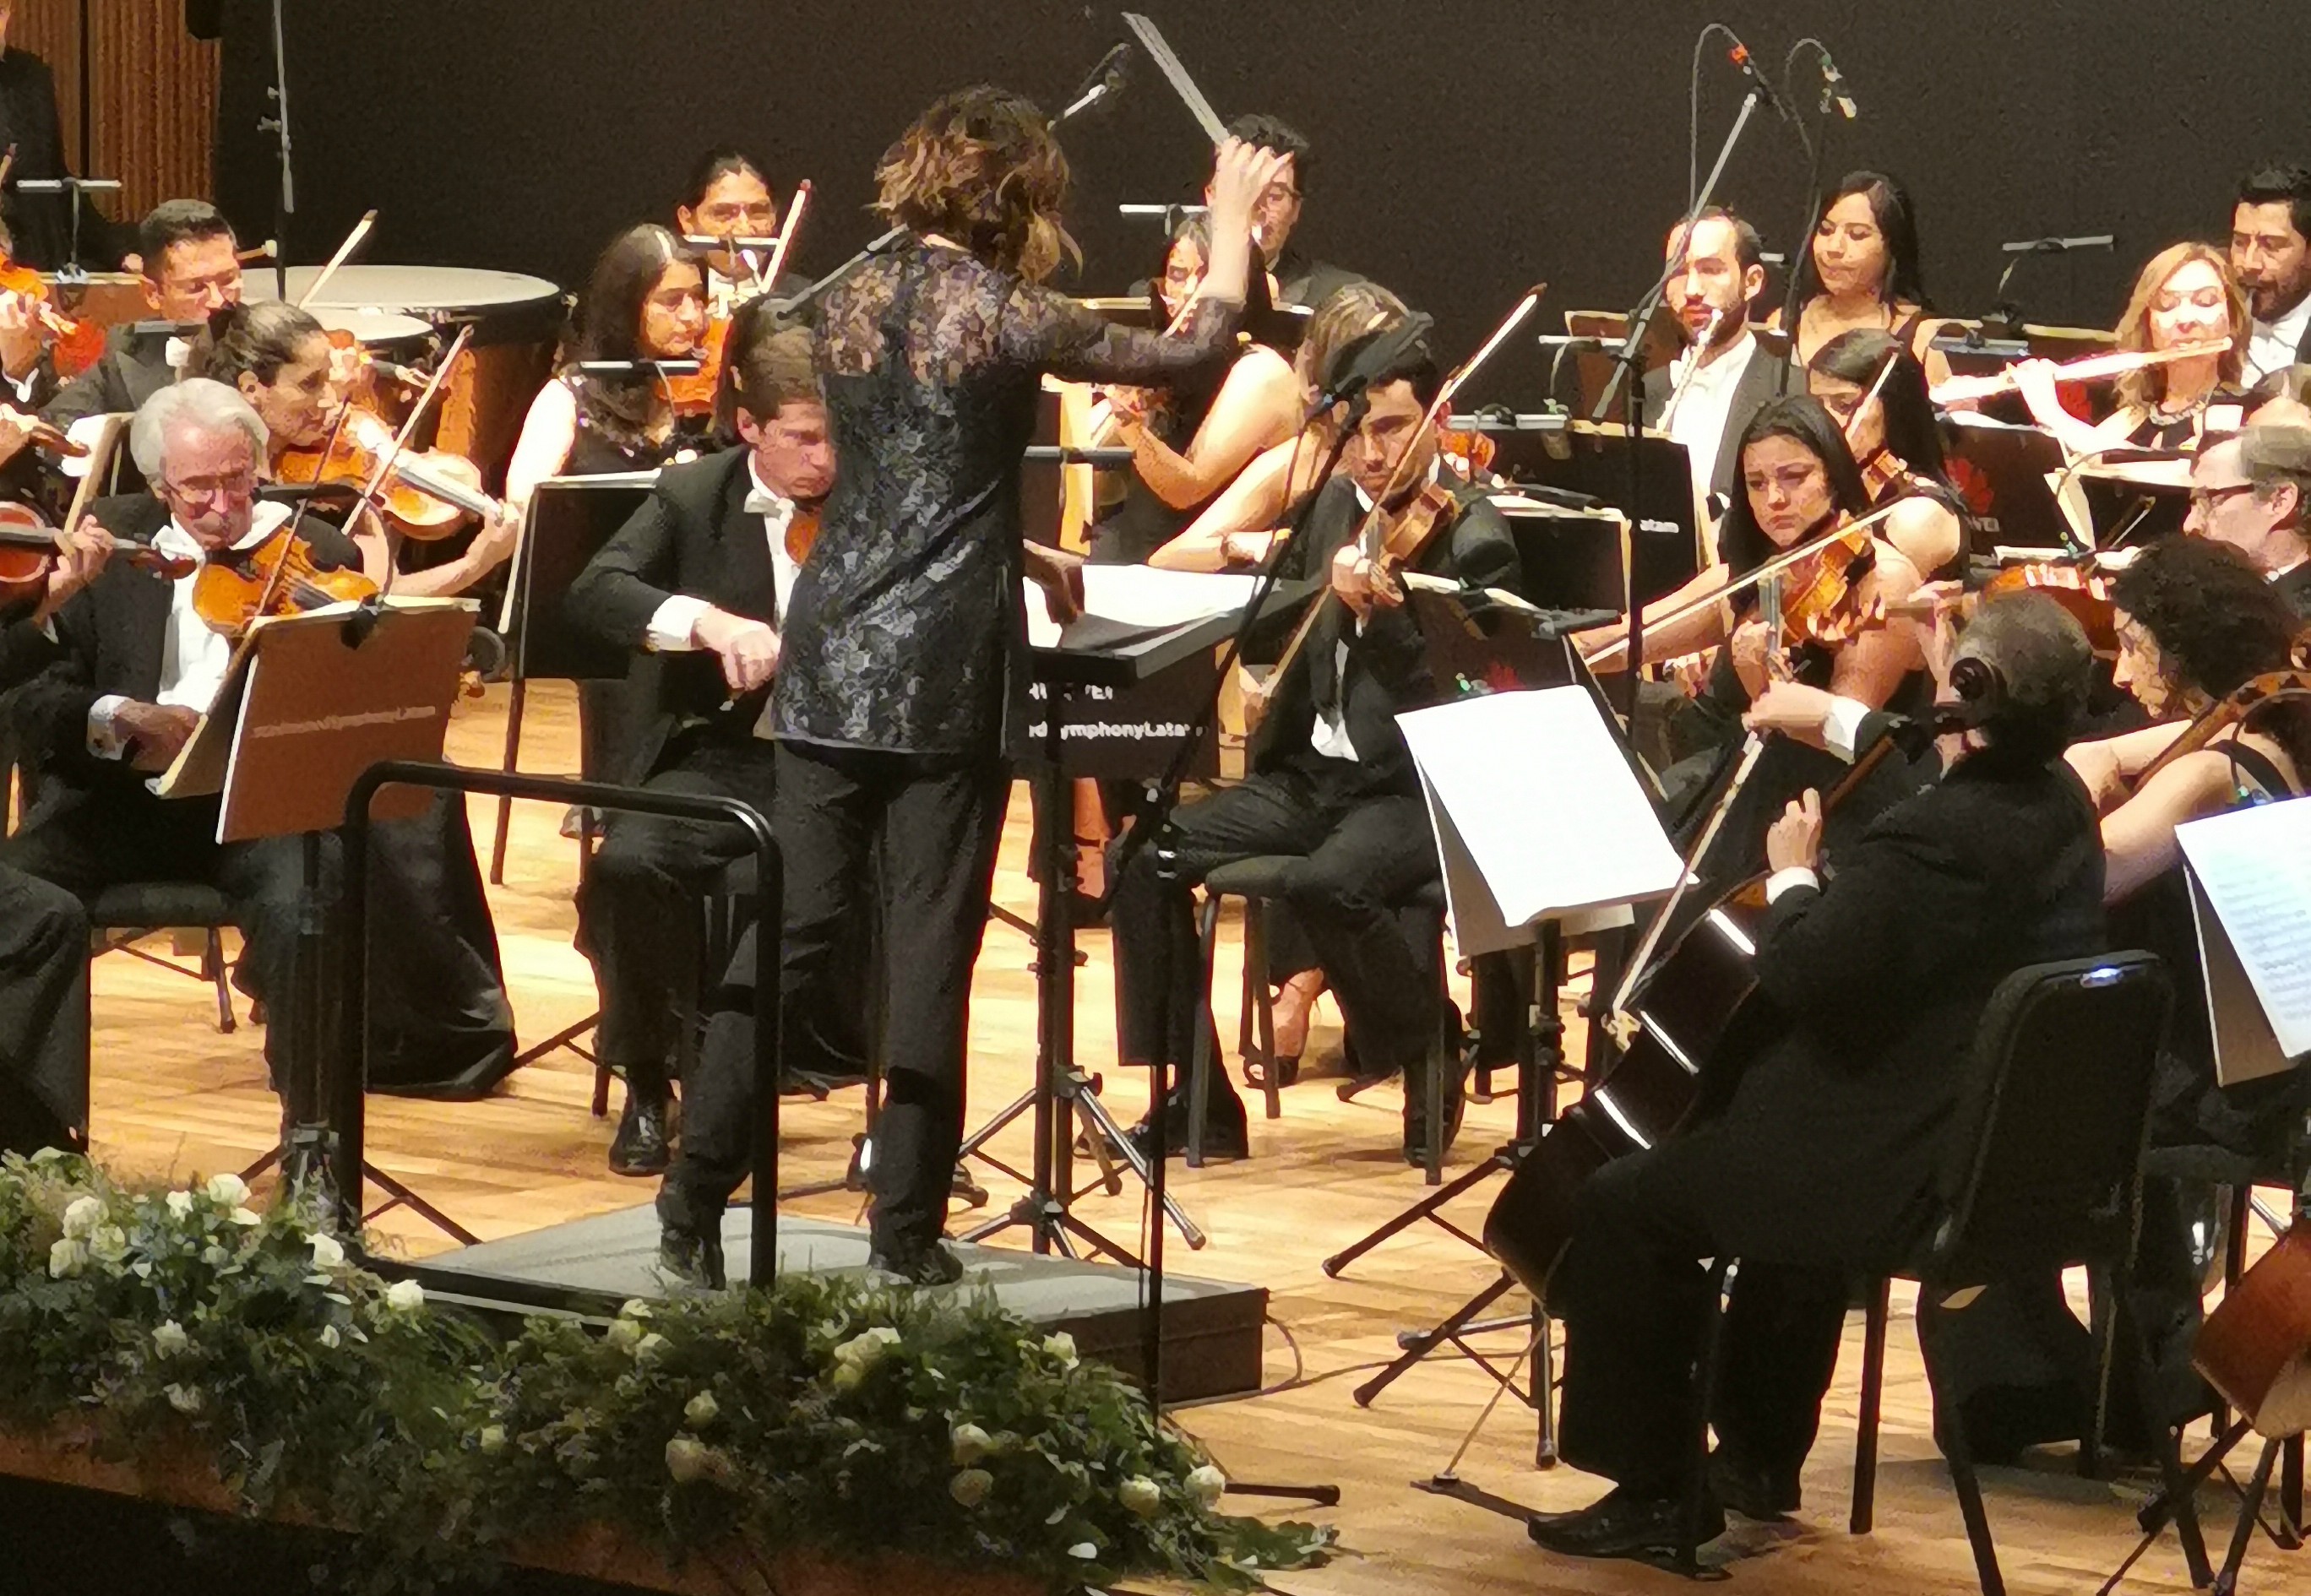 La sinfonía inconclusa, ahora con 4 movimientos y no con dos, se presentó en la Ciudad de México el 22 de marzo. (Foto Prensa Libre: Huawei)